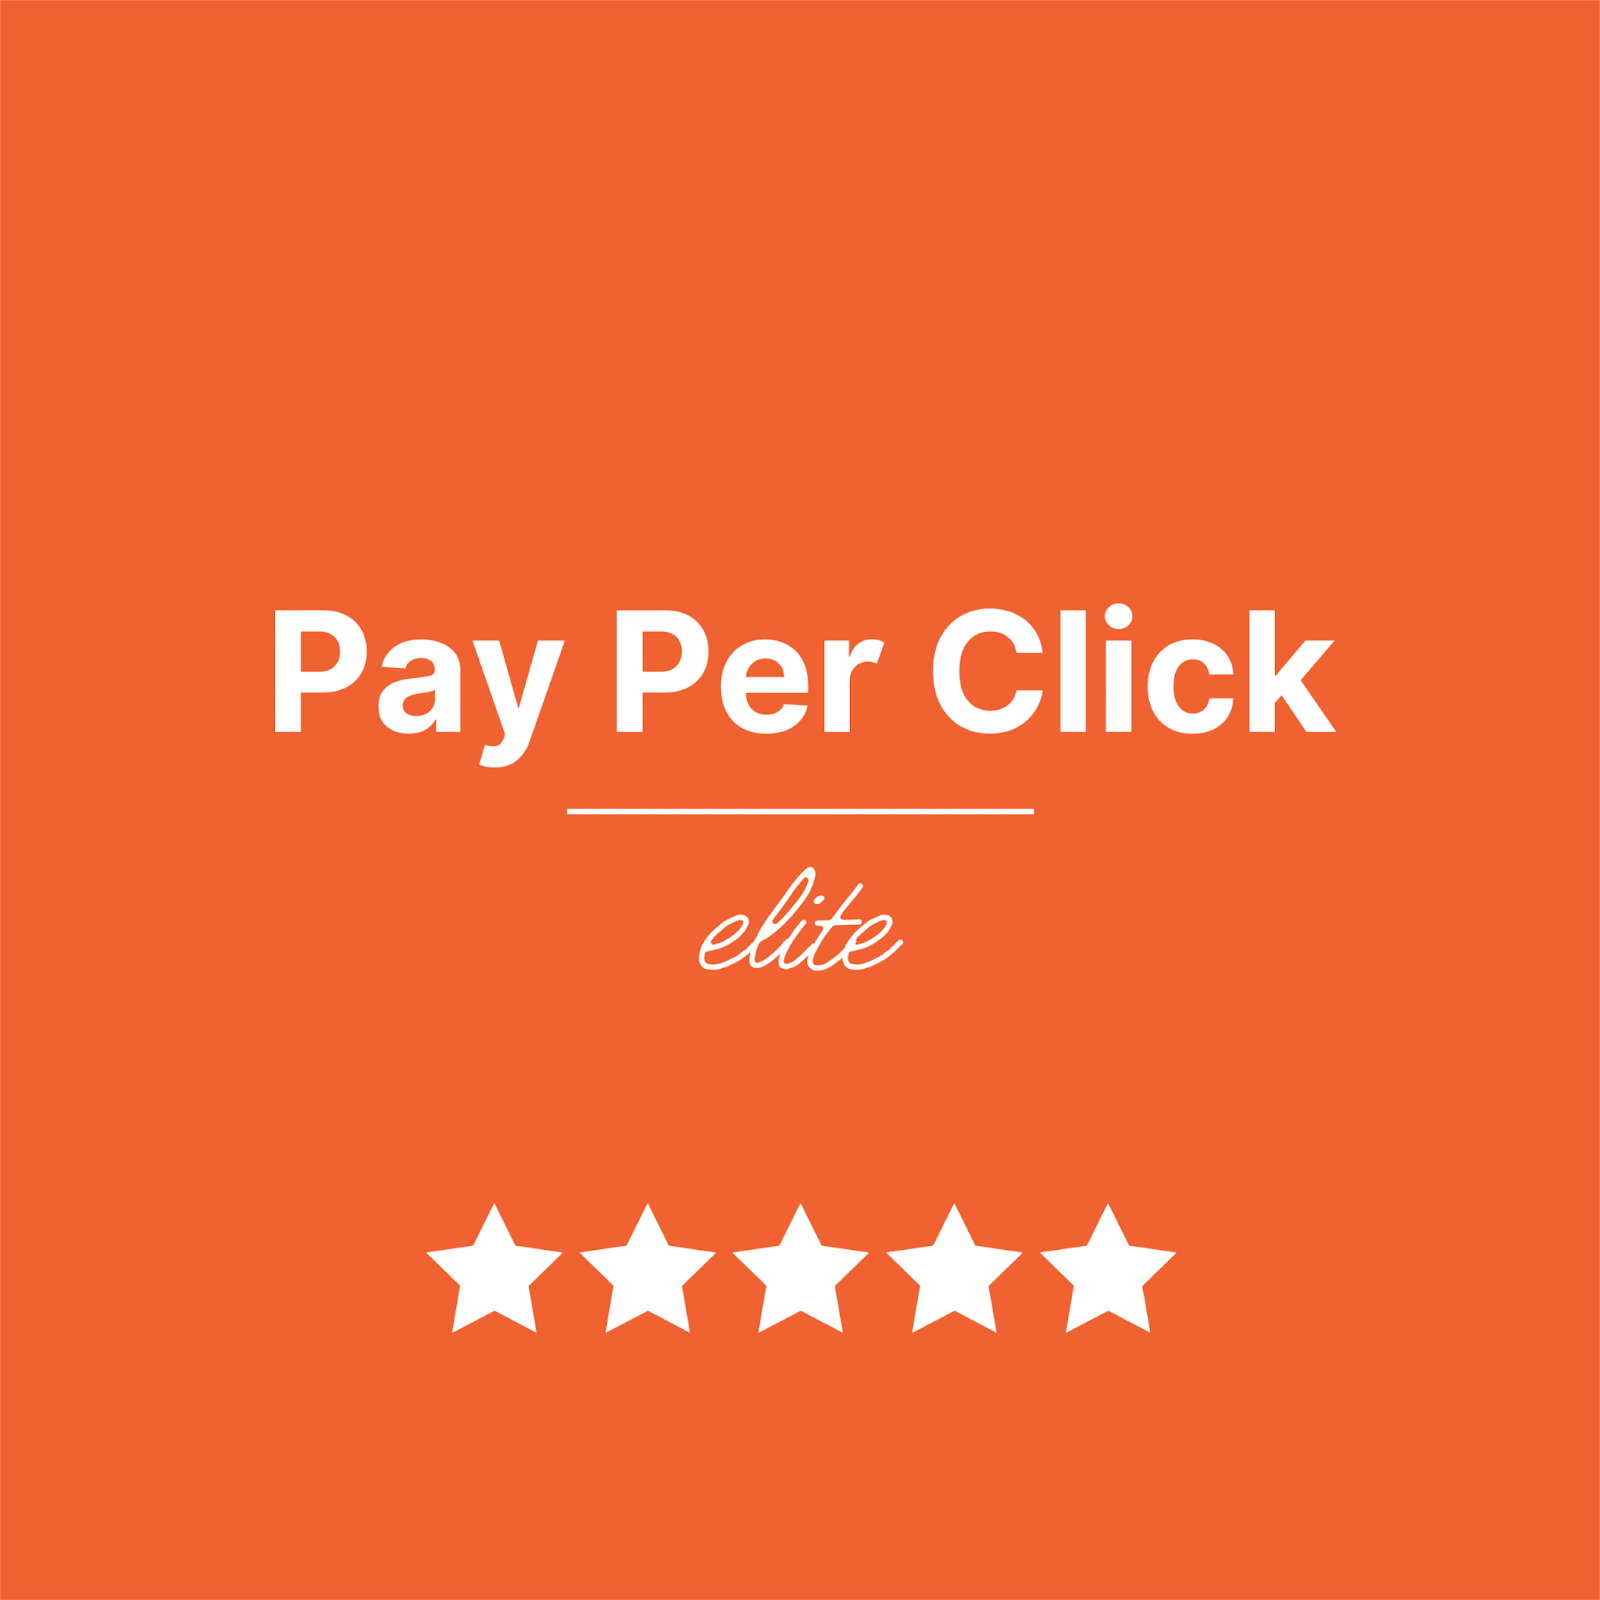 Pay-per-click